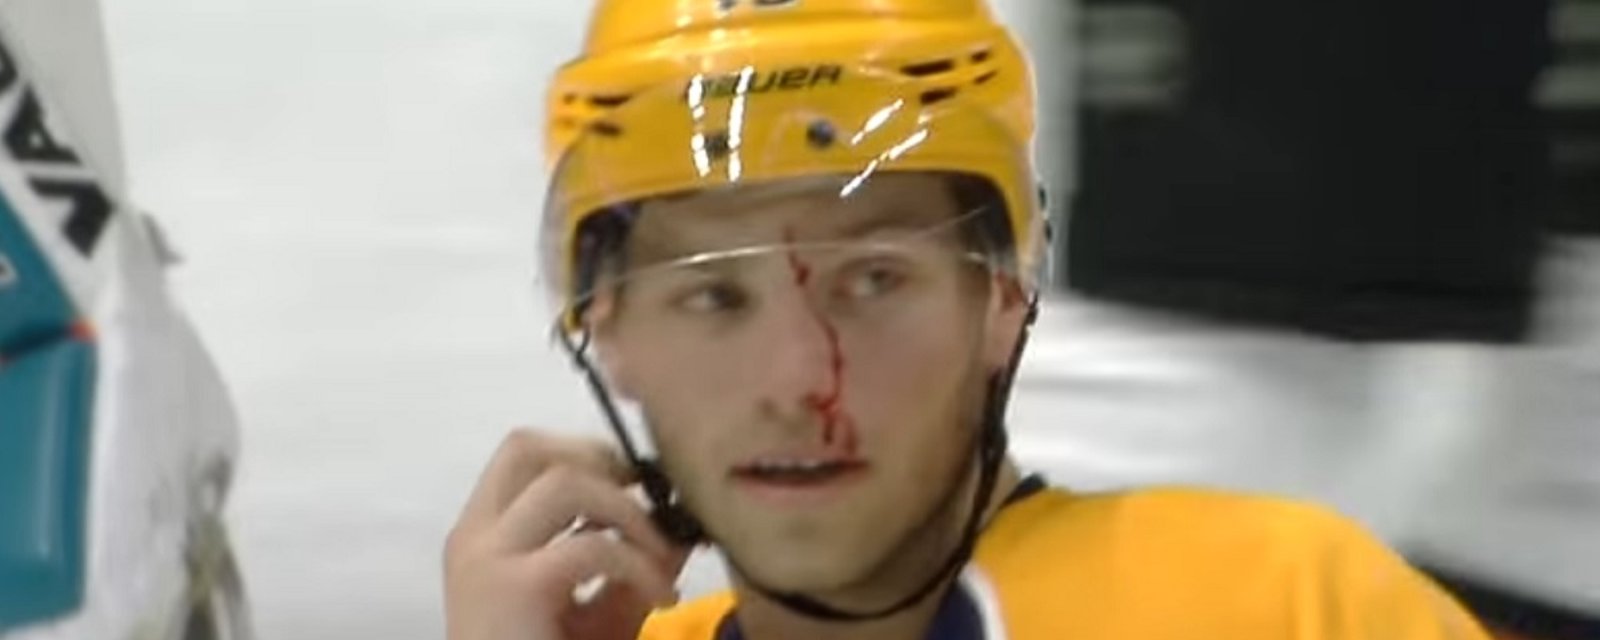 Breaking: NHL suspends Haley after huge sucker punch leaves Jarnkrok bloody.